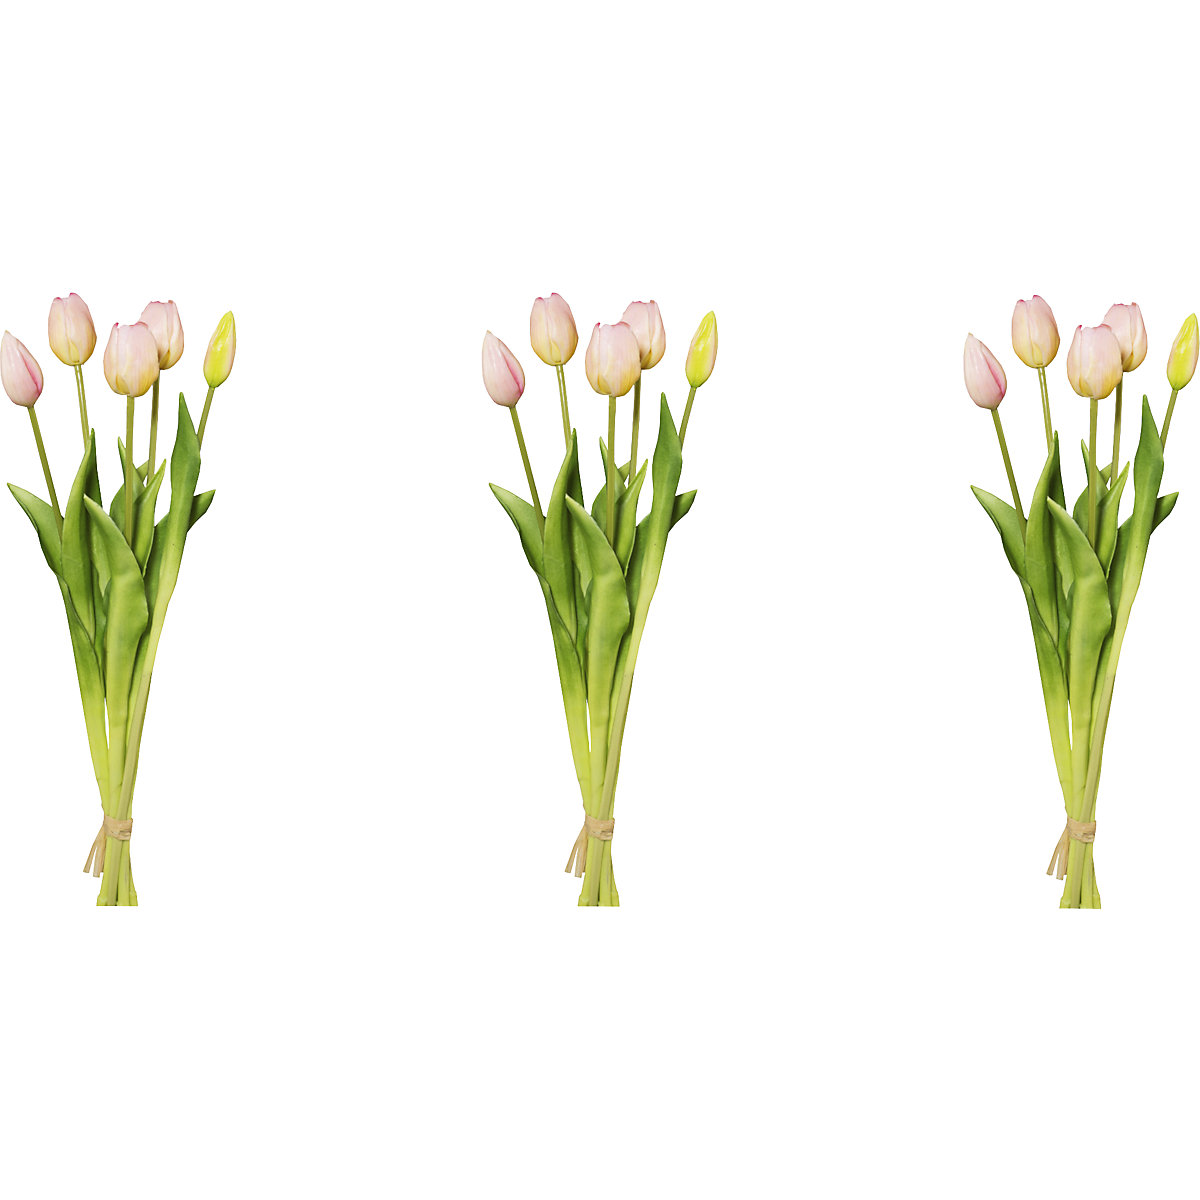 Šopek tulipanov, naraven videz, 5-delni šopek